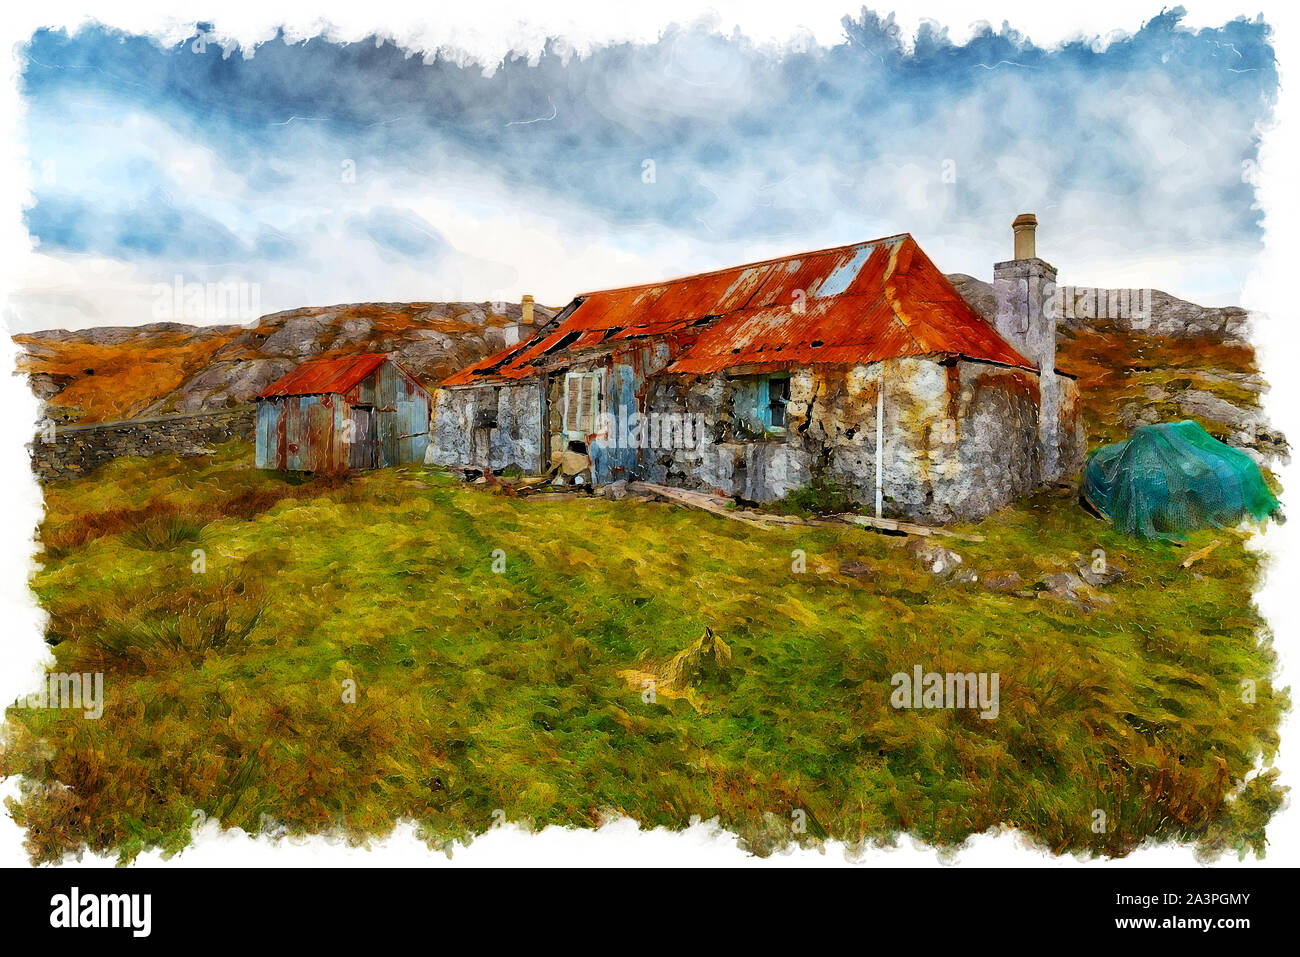 La pittura ad acquerello di un vecchio abbandonato croft on the Golden Road a Quidnish sull'Isle of Harris nelle Western Isles della Scozia Foto Stock